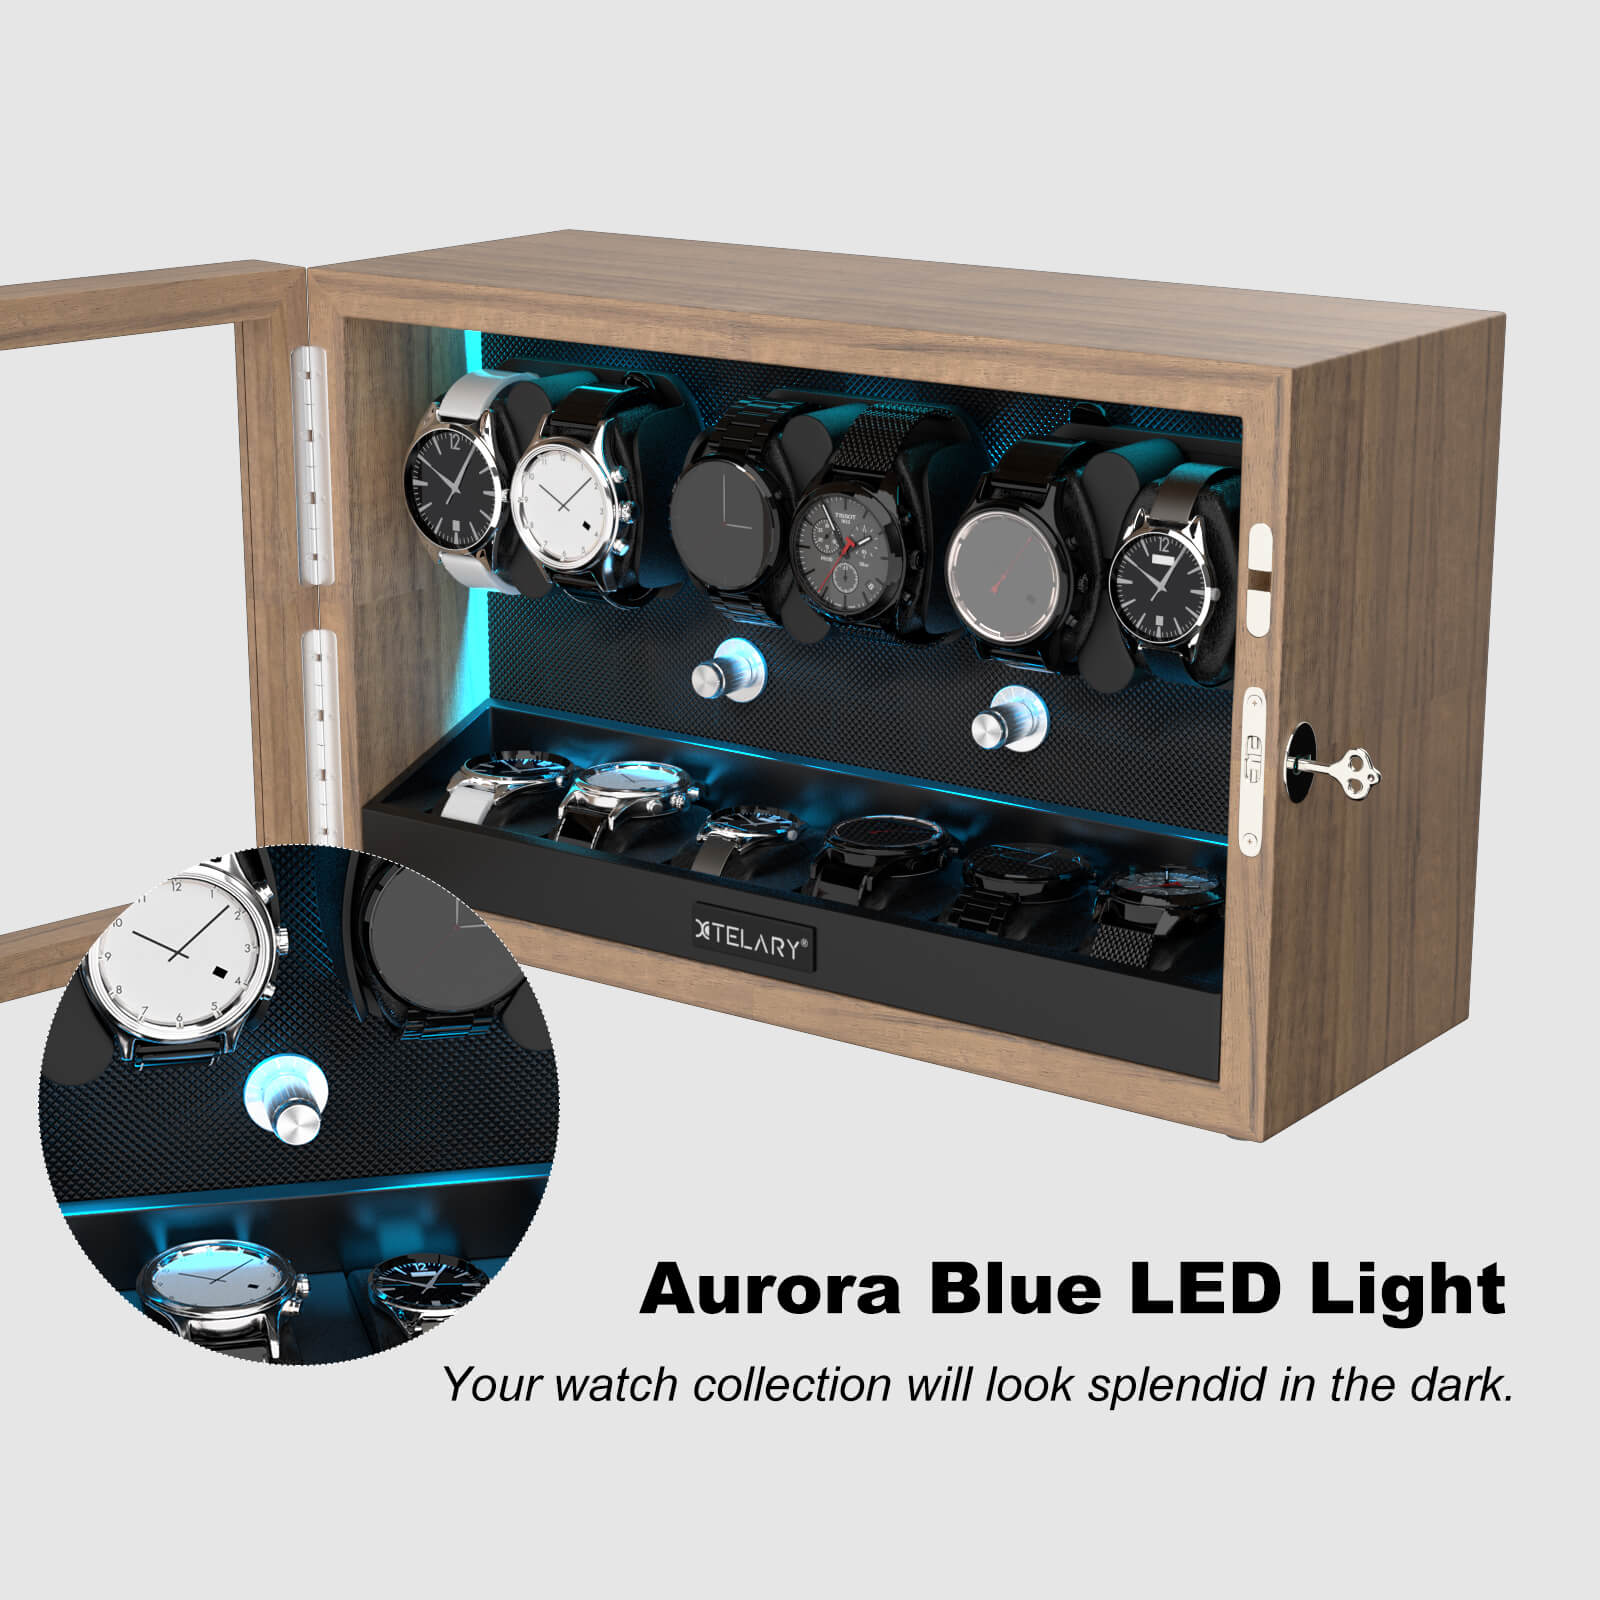 6 Remontoirs de Montres pour Montres Automatiques avec 6 Rangements Supplémentaires Lumière LED Bleue Aurora - Grain